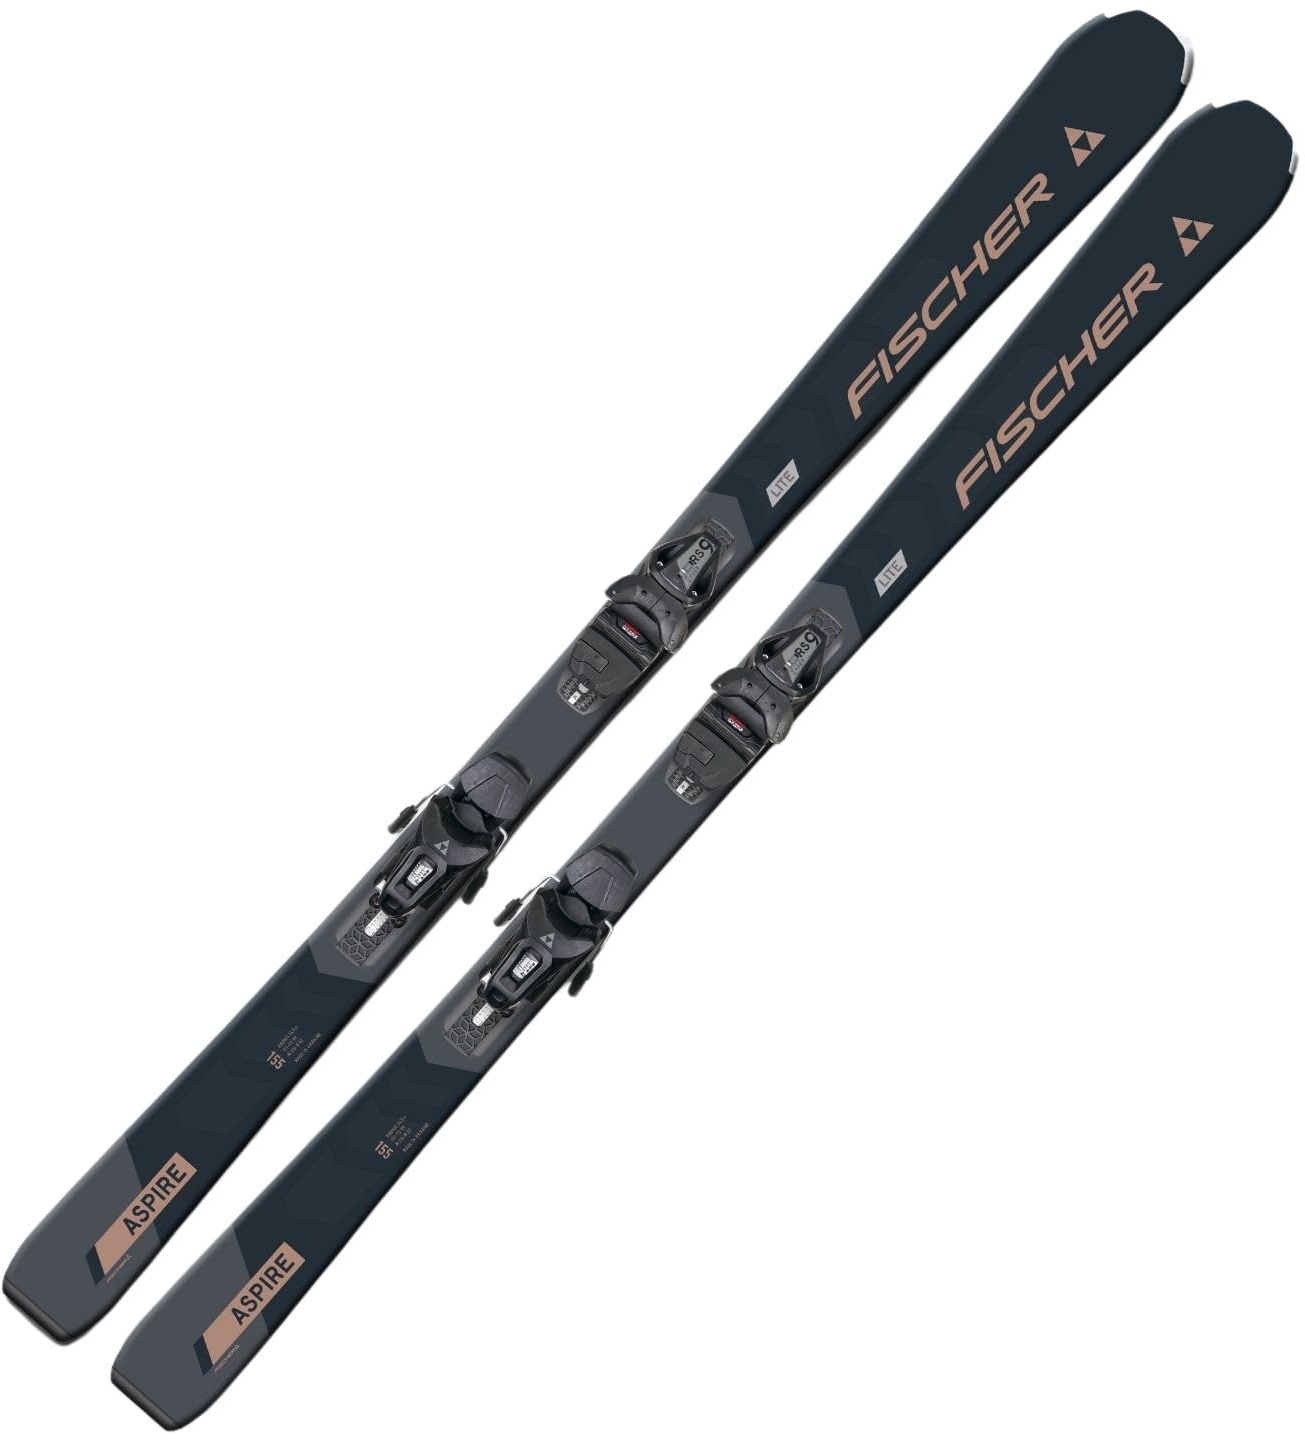 Damenski Ski Alpinski Carvingski On-Piste-Rocker - Fischer Aspire SLR - 160cm - inkl. Bindung RS9 SLR Z3-9 - All Mountain Ski - geeignet für Einsteiger bis Fortgeschrittene